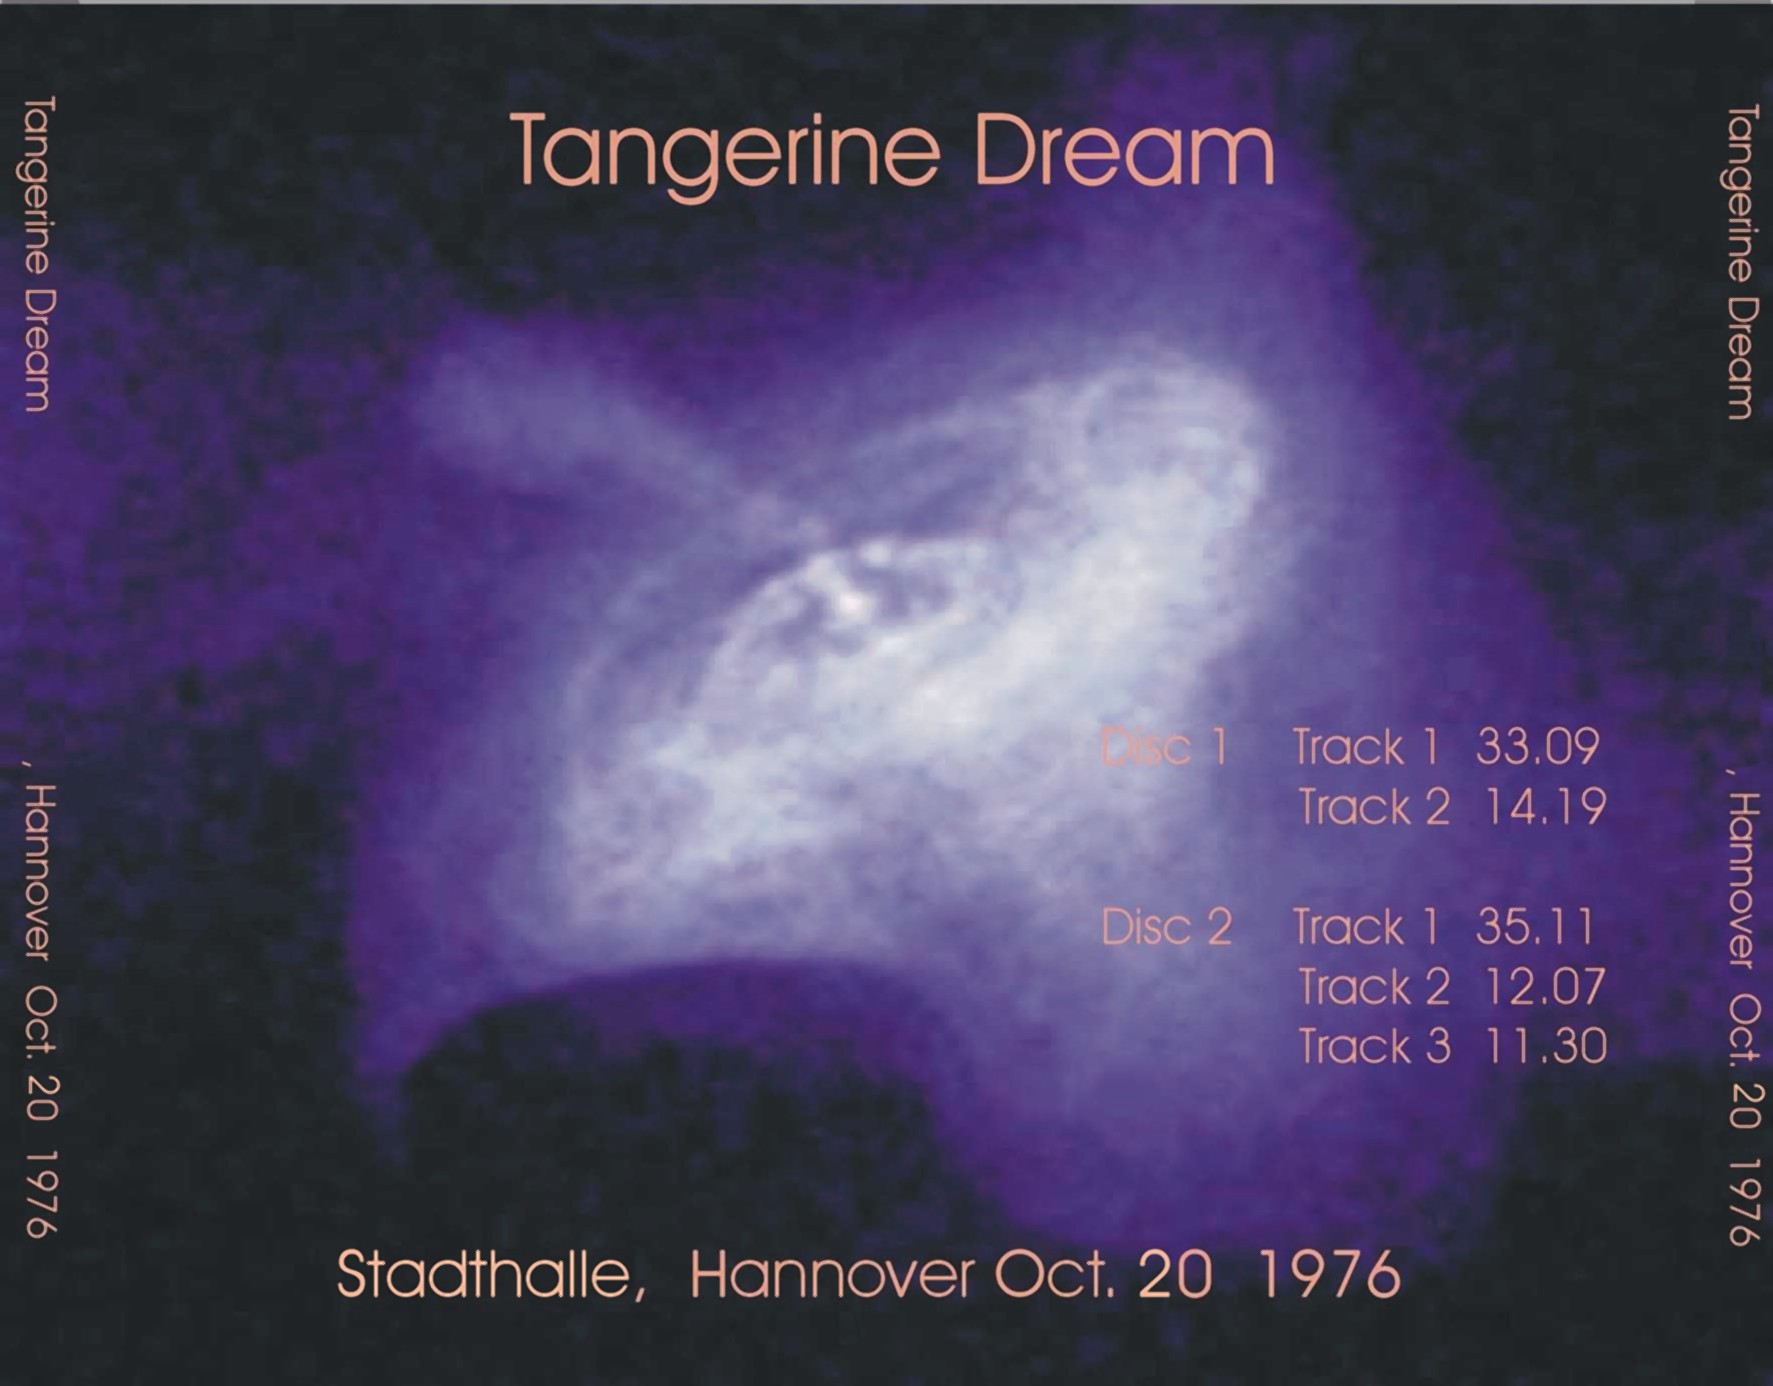 TangerineDream1974-1976VariousOddsAndEnds (4).jpg